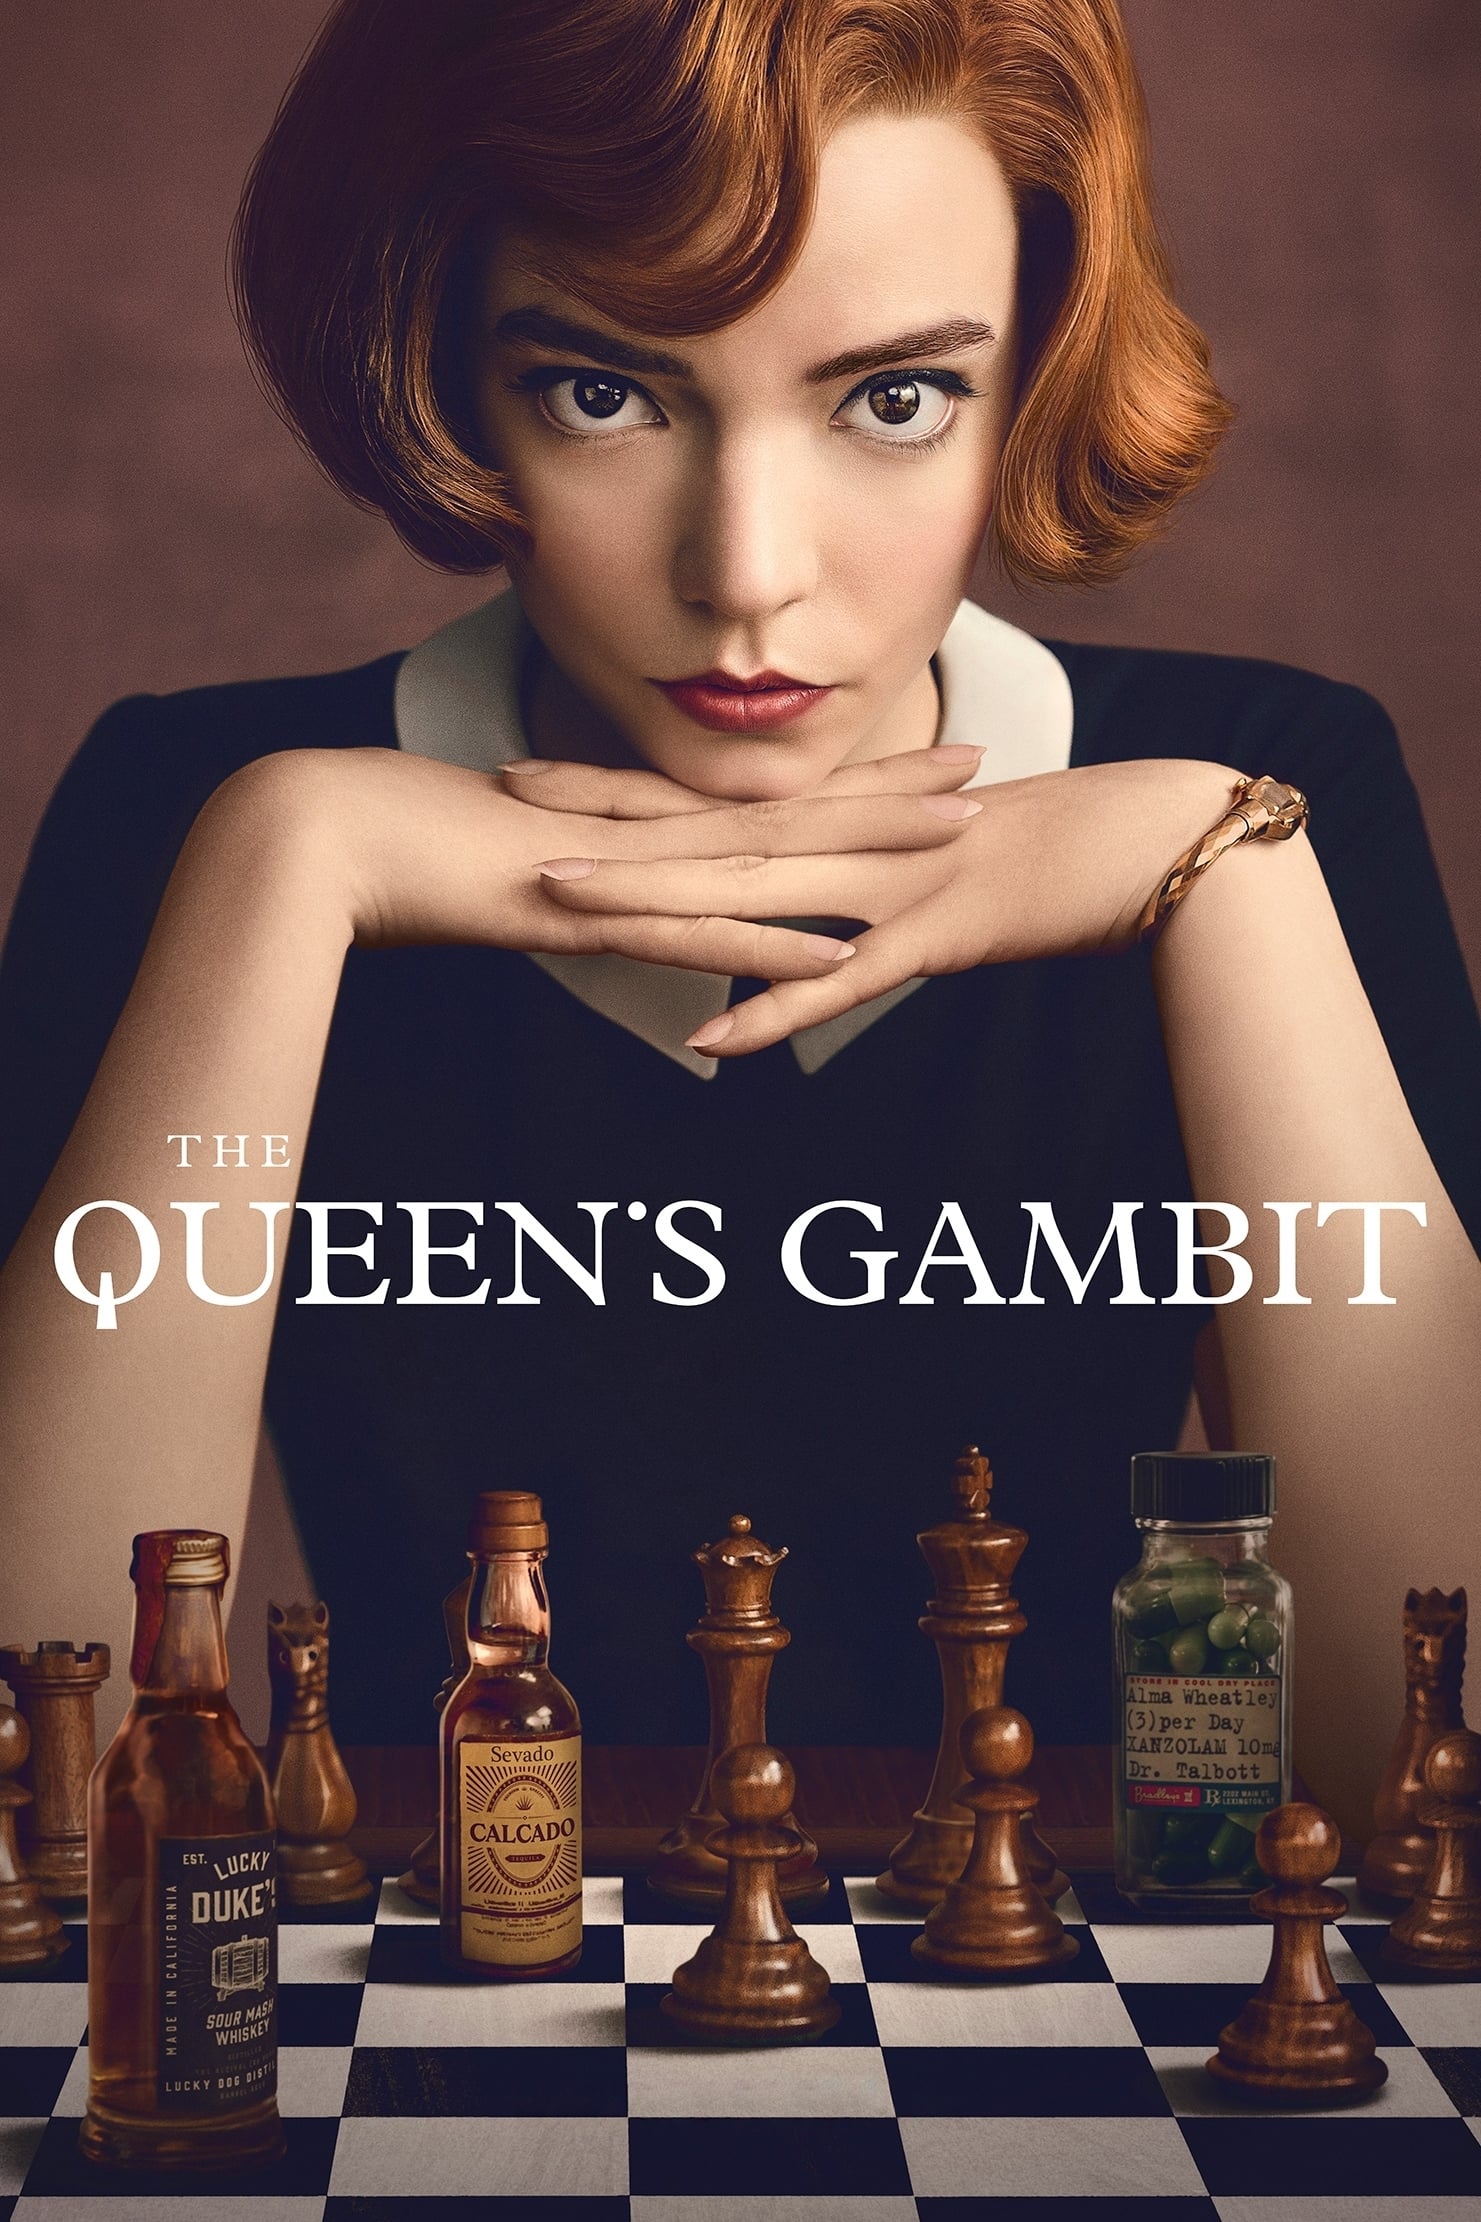 The Queen's Gambit rating